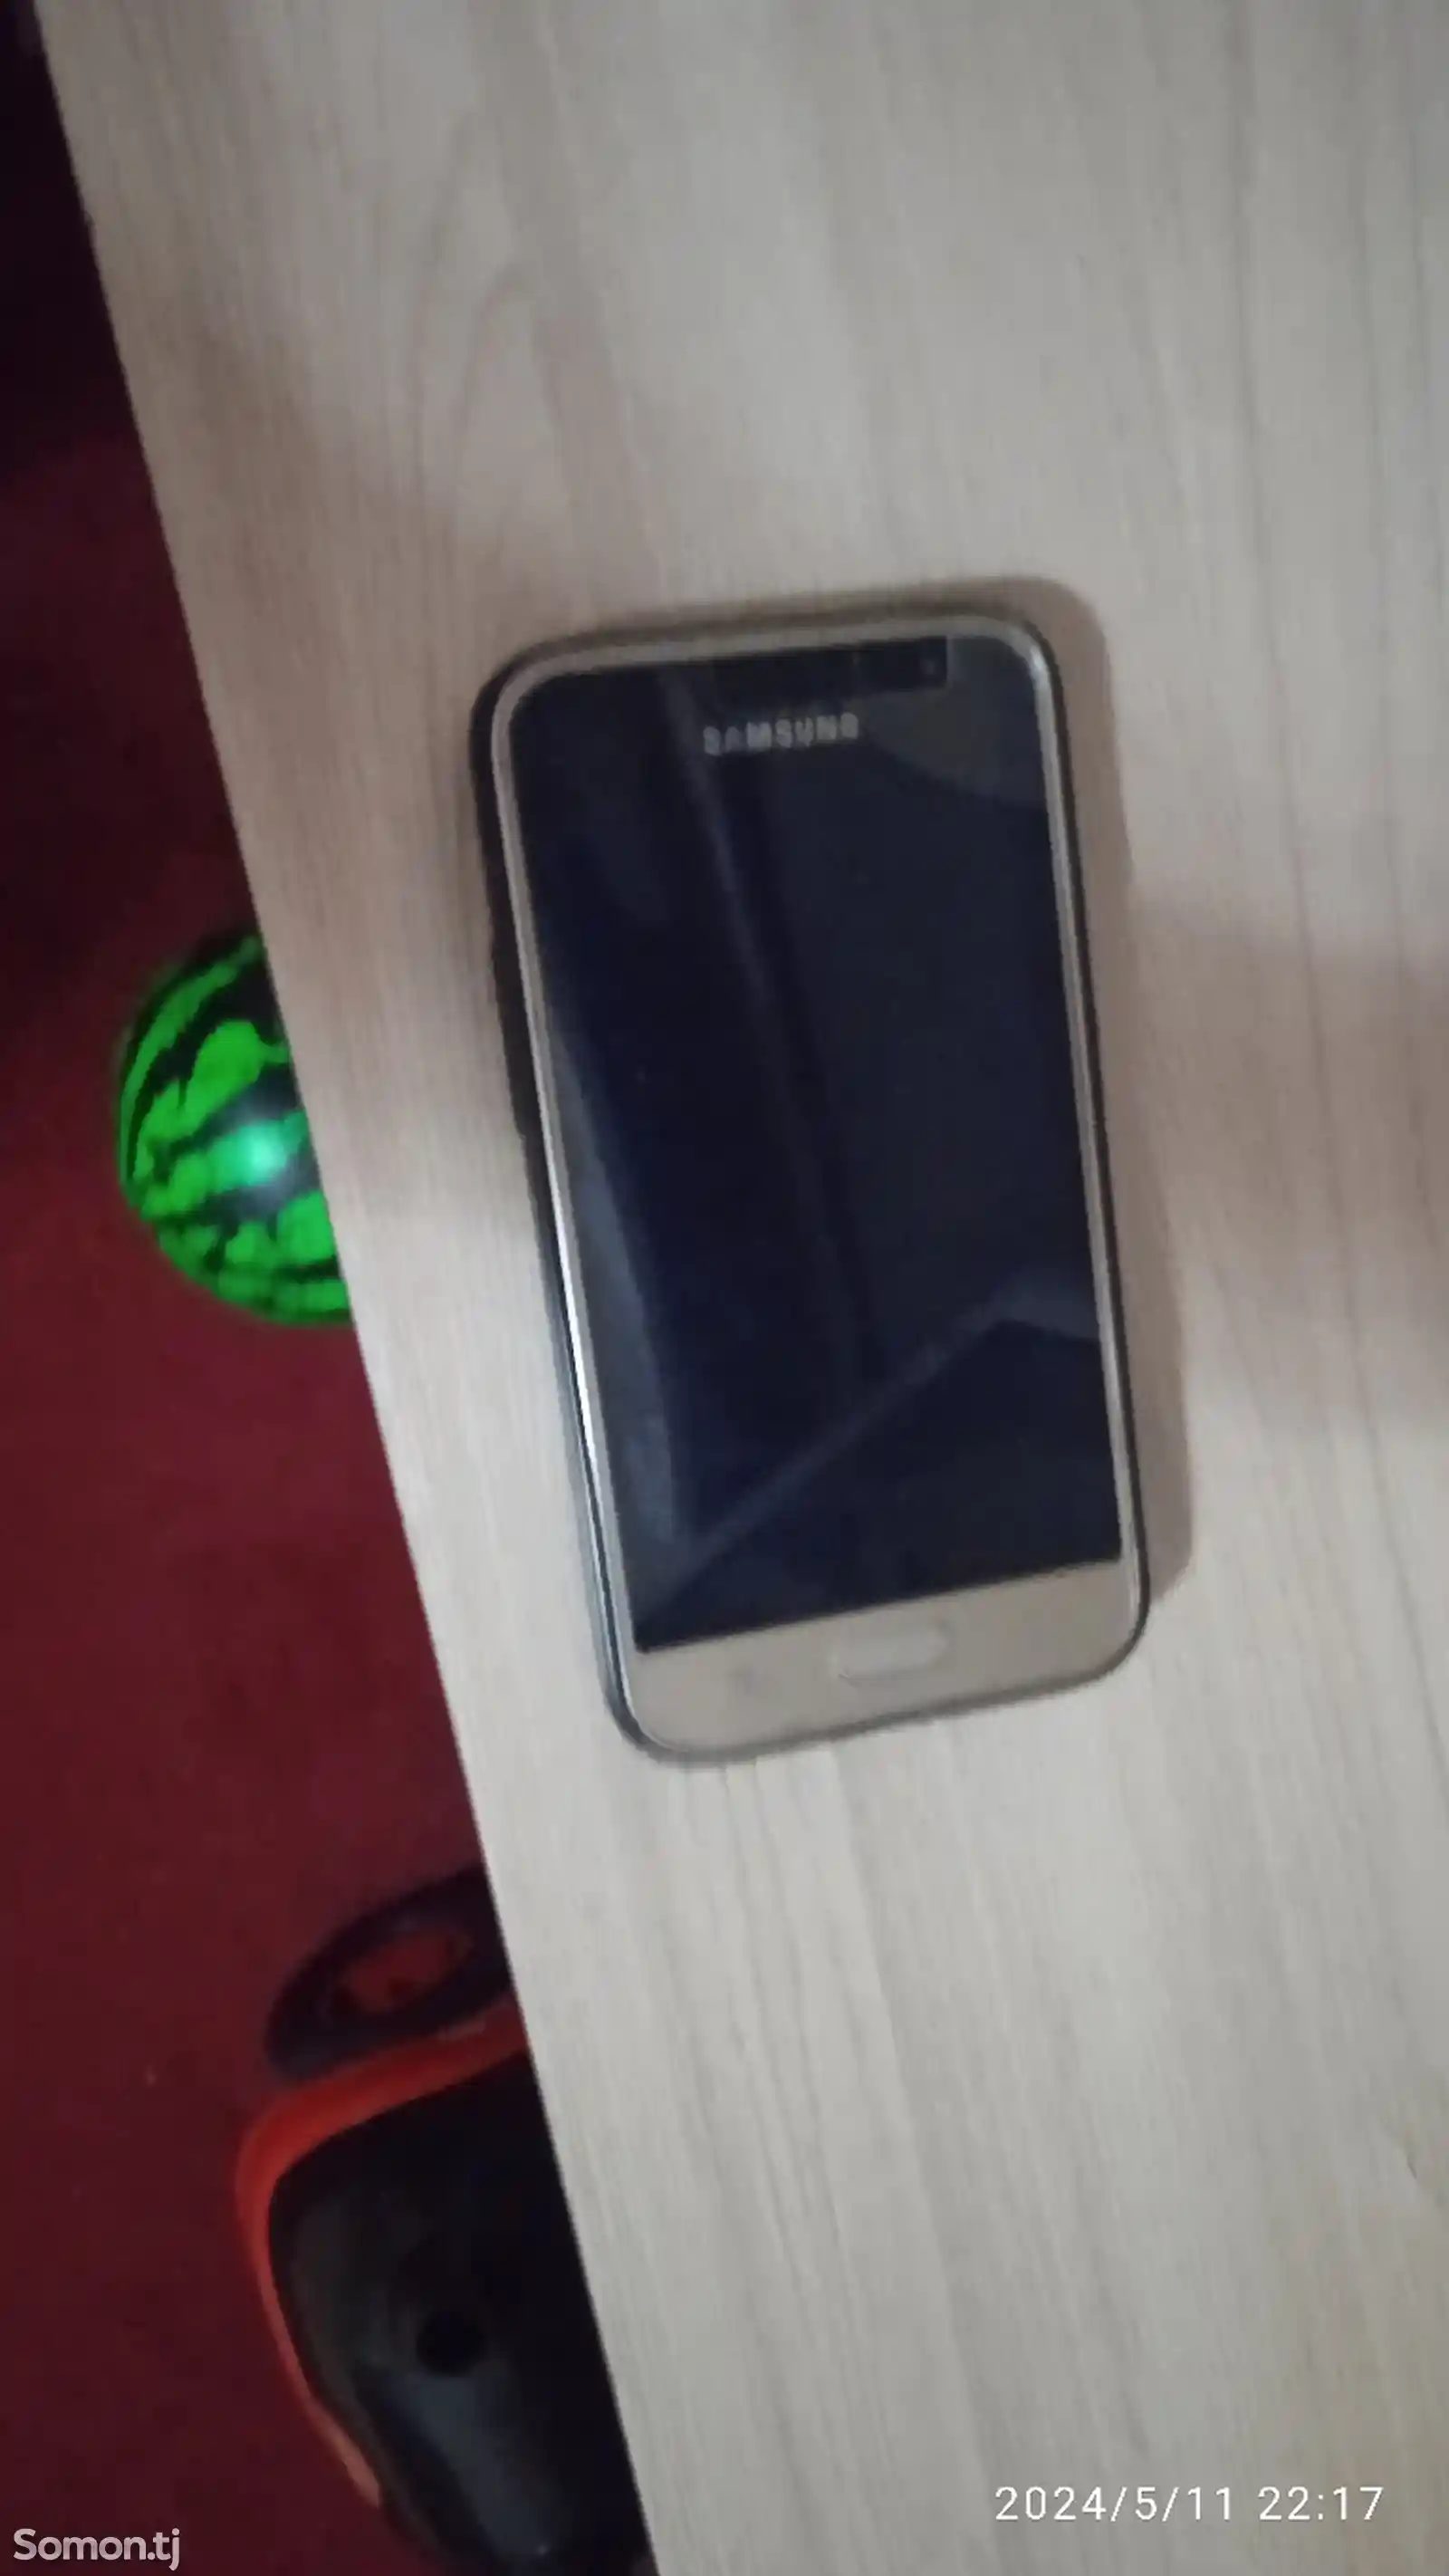 Samsung Galaxy J1, 2016-2